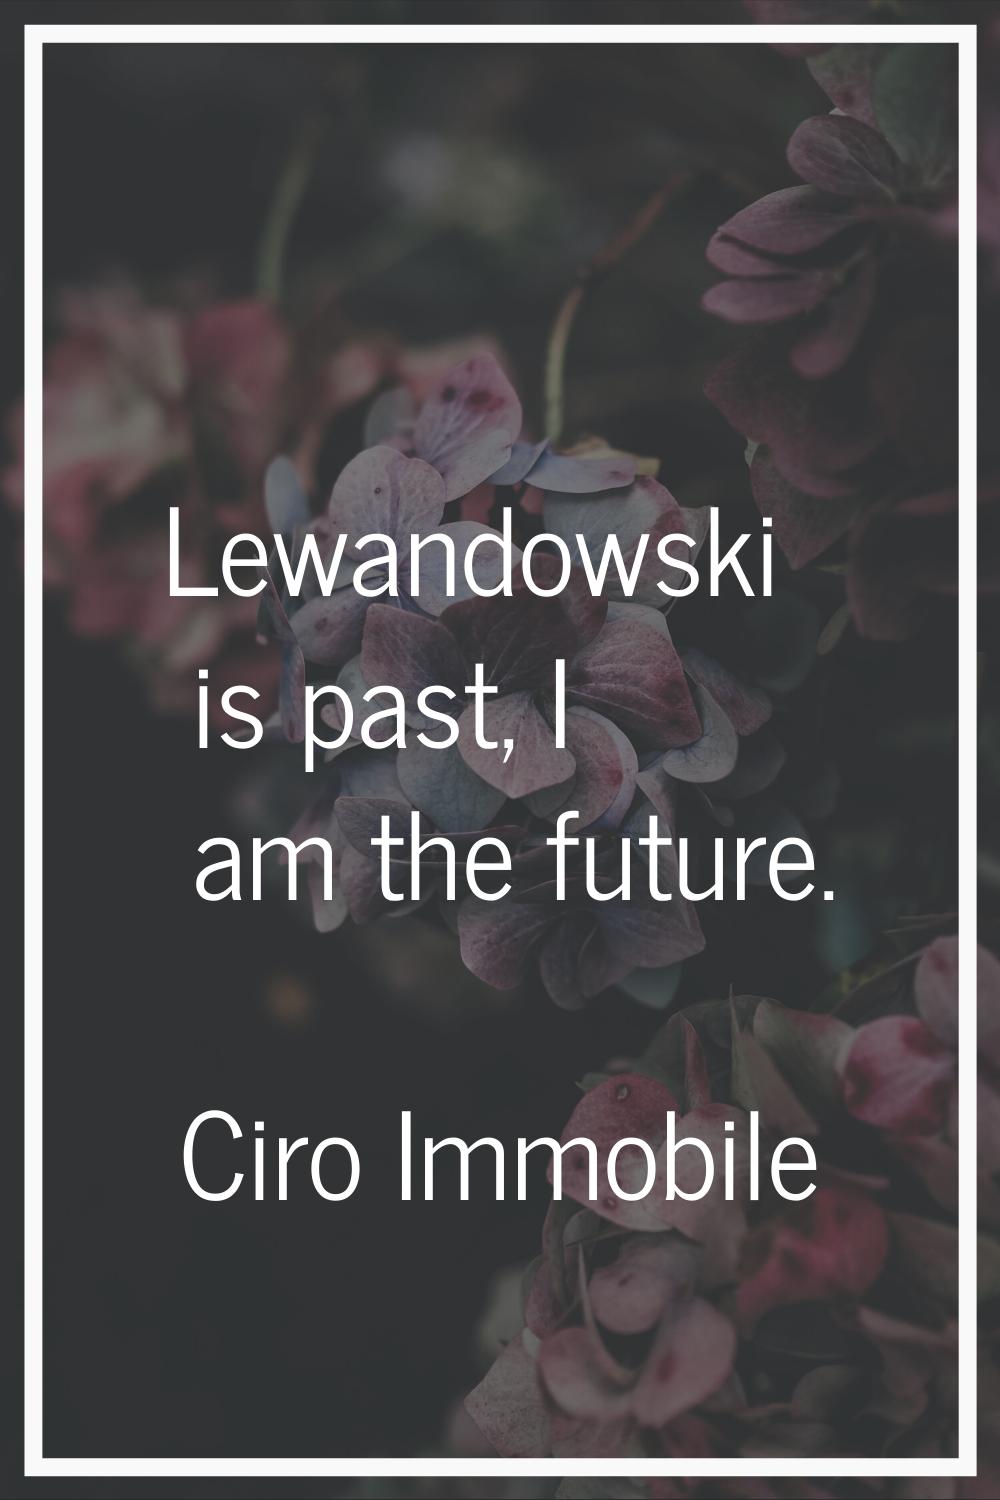 Lewandowski is past, I am the future.